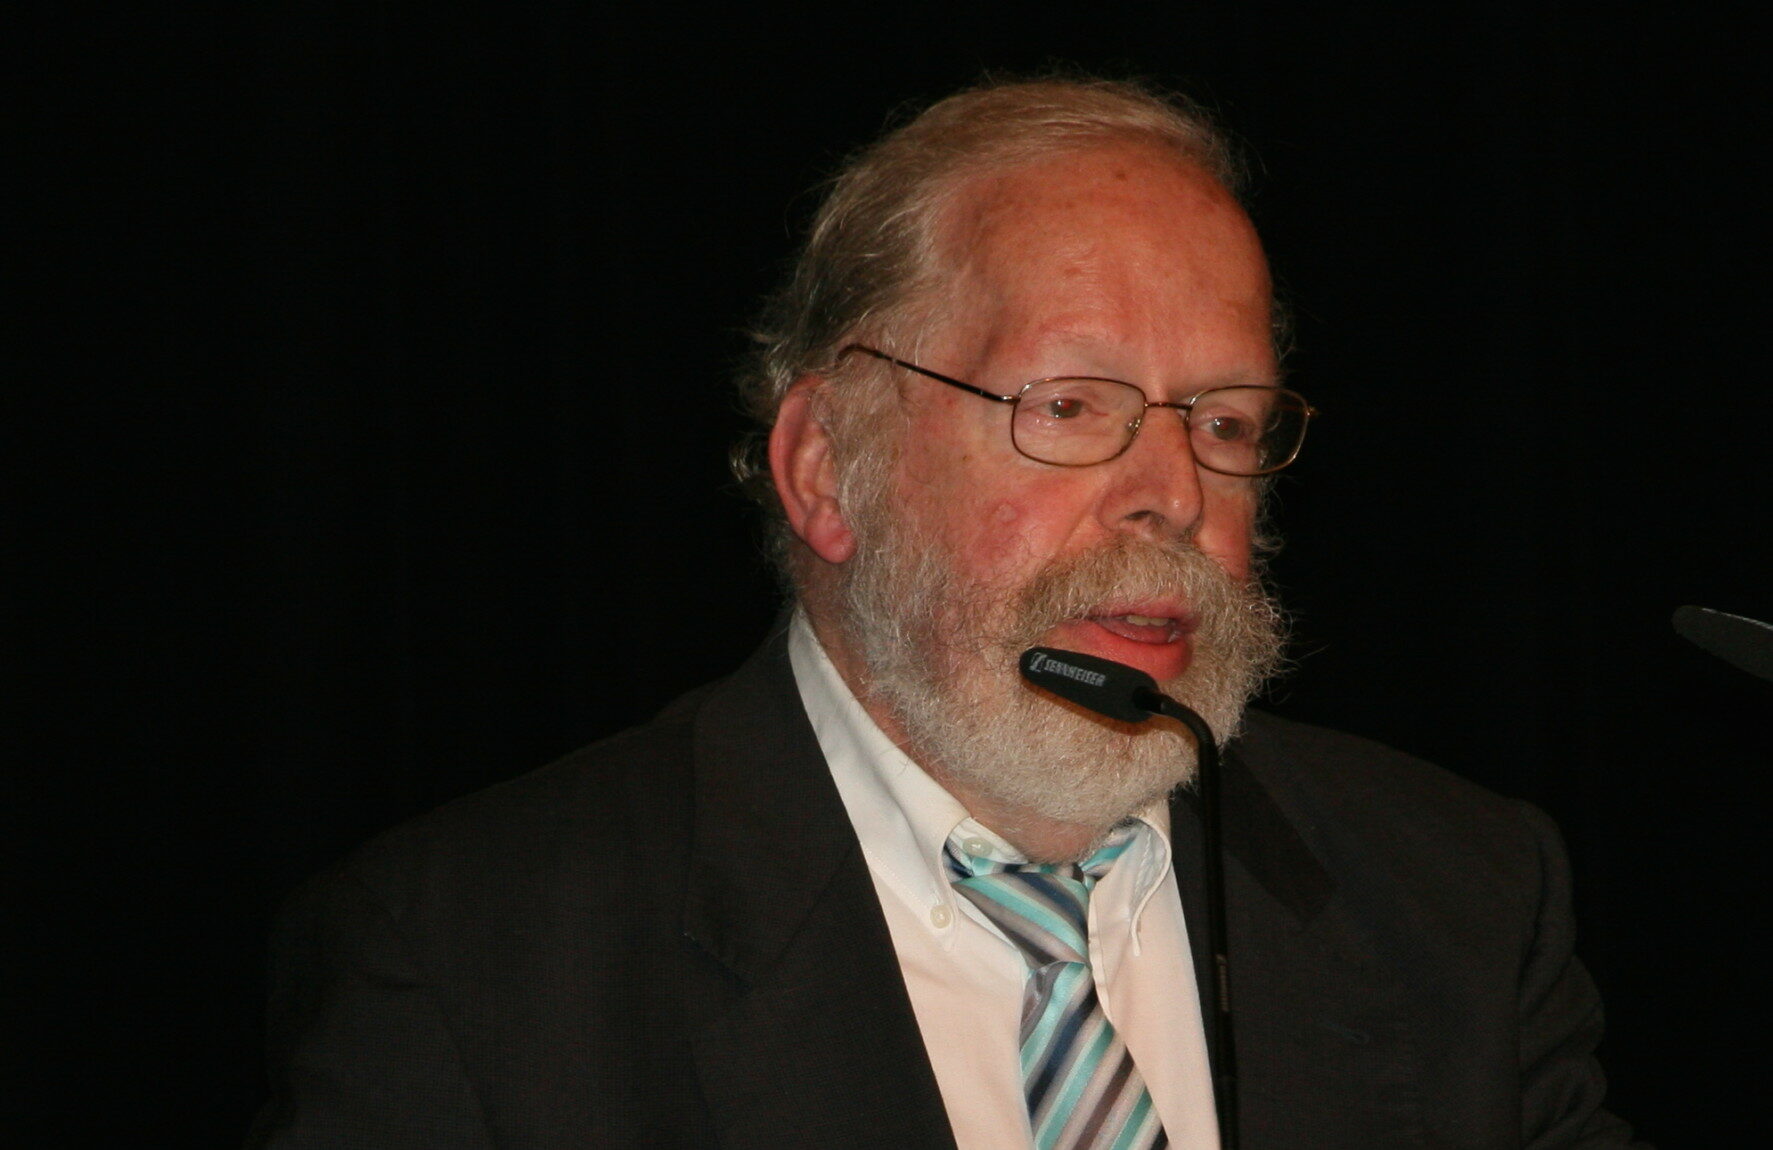 Dr. Werner Beckmann